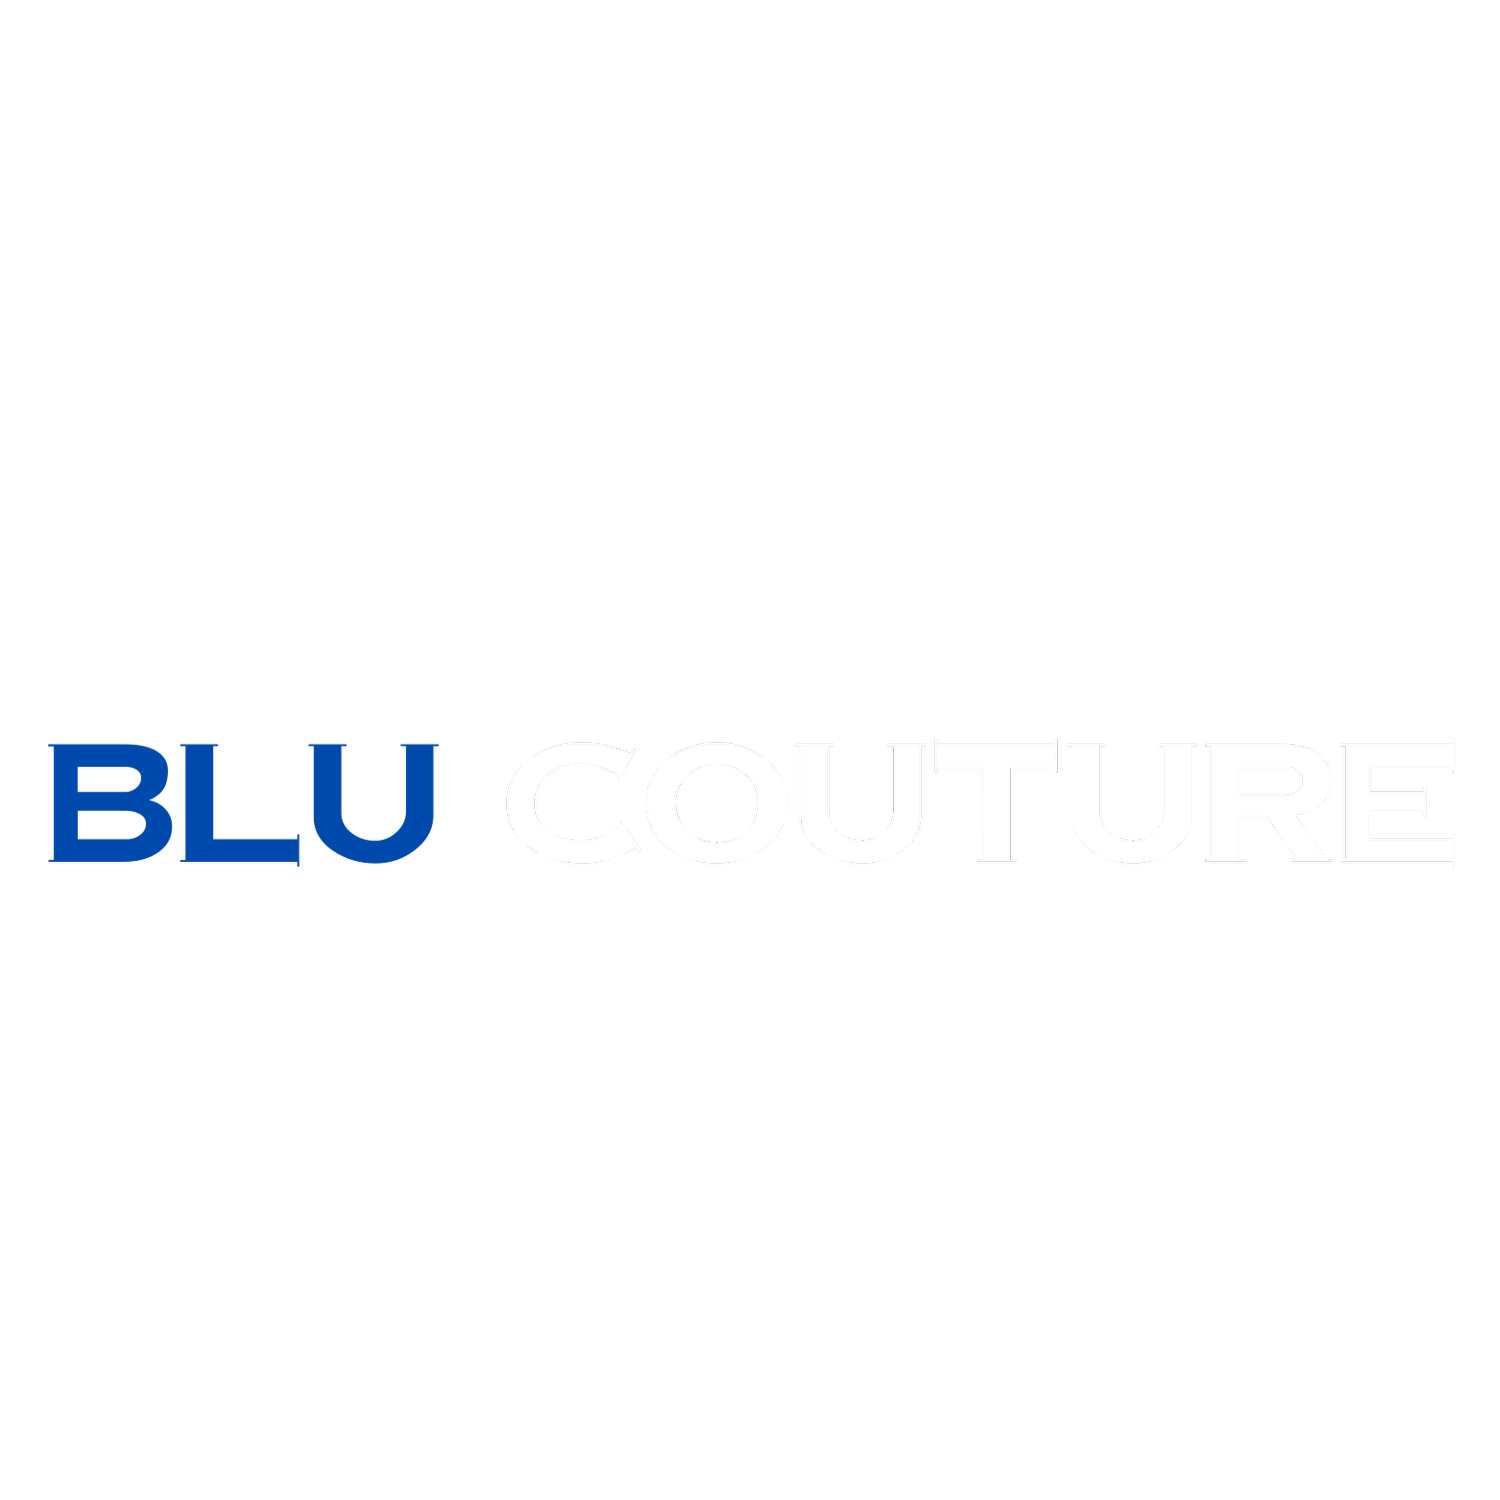 Blu Couture Logo